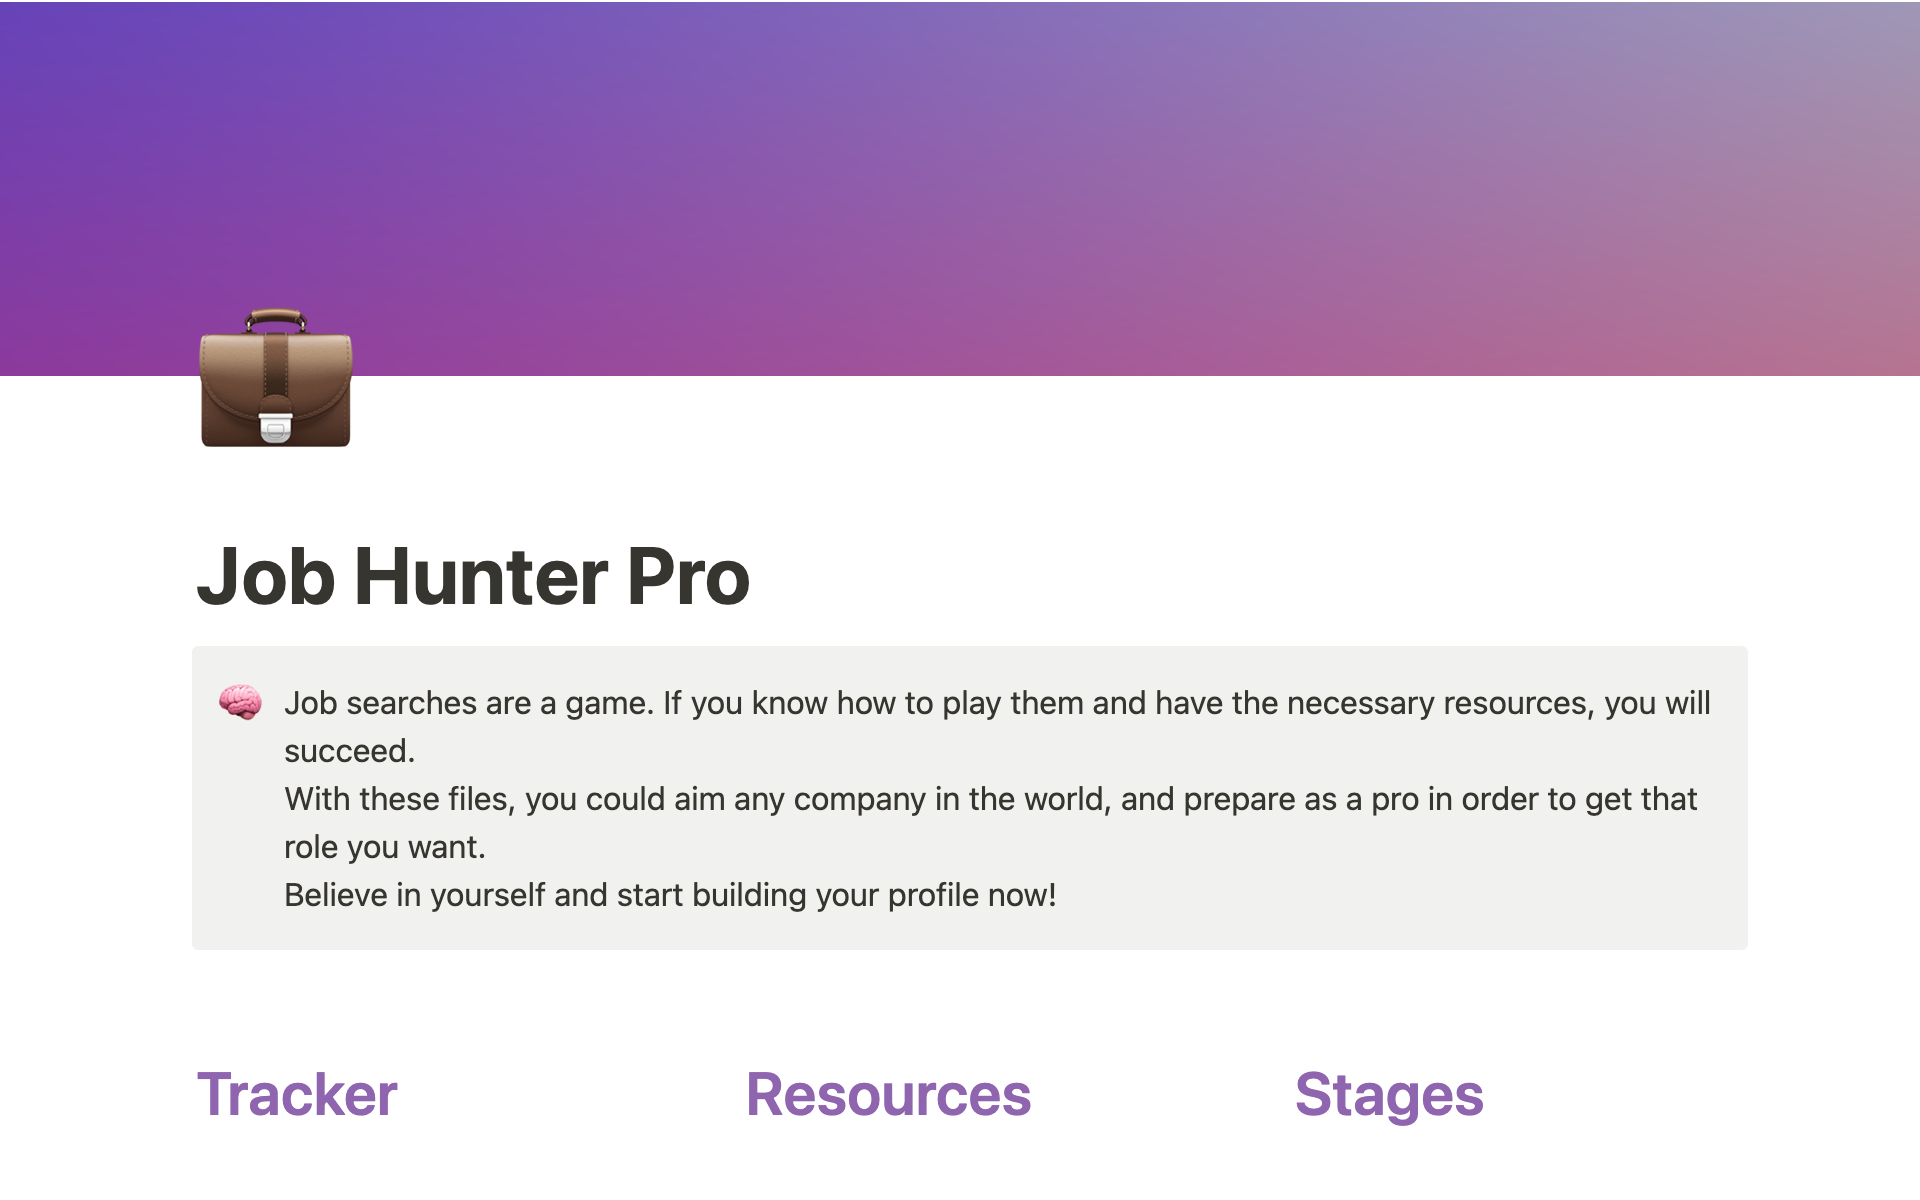 Uma prévia do modelo para Job Hunter Pro